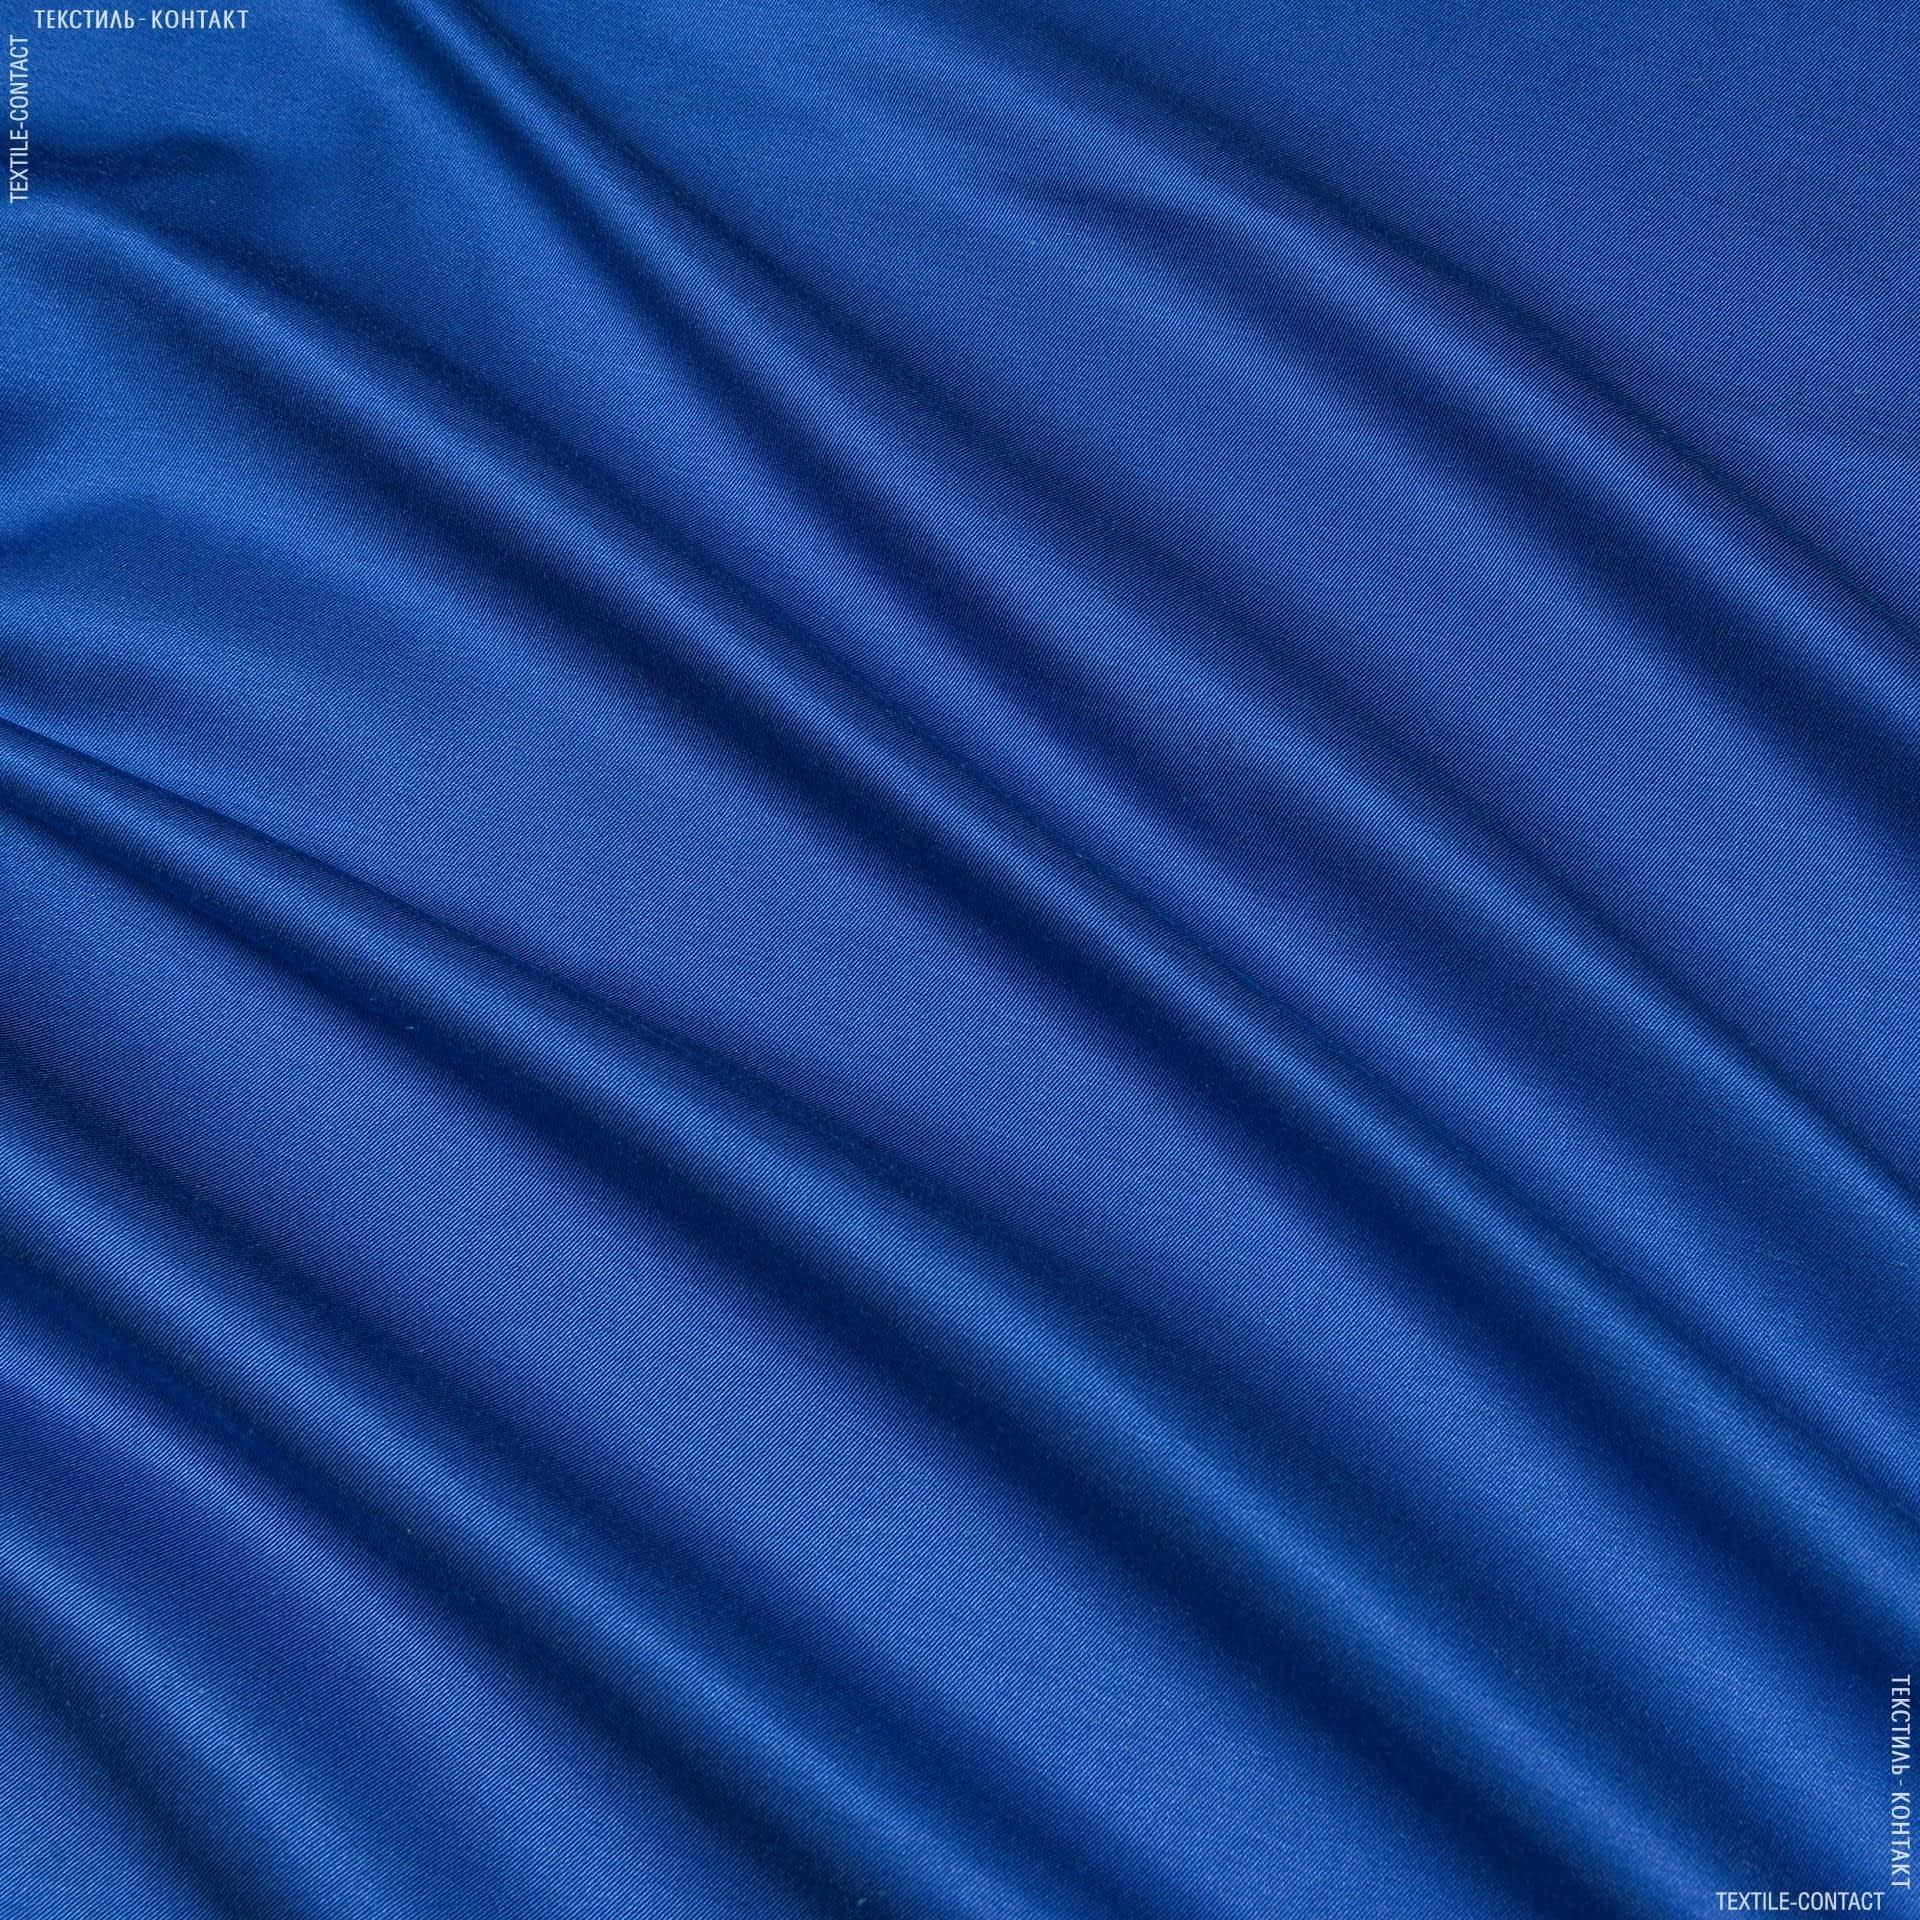 Ткани для спецодежды - Плащевая ткань ортон ф светло-синий во